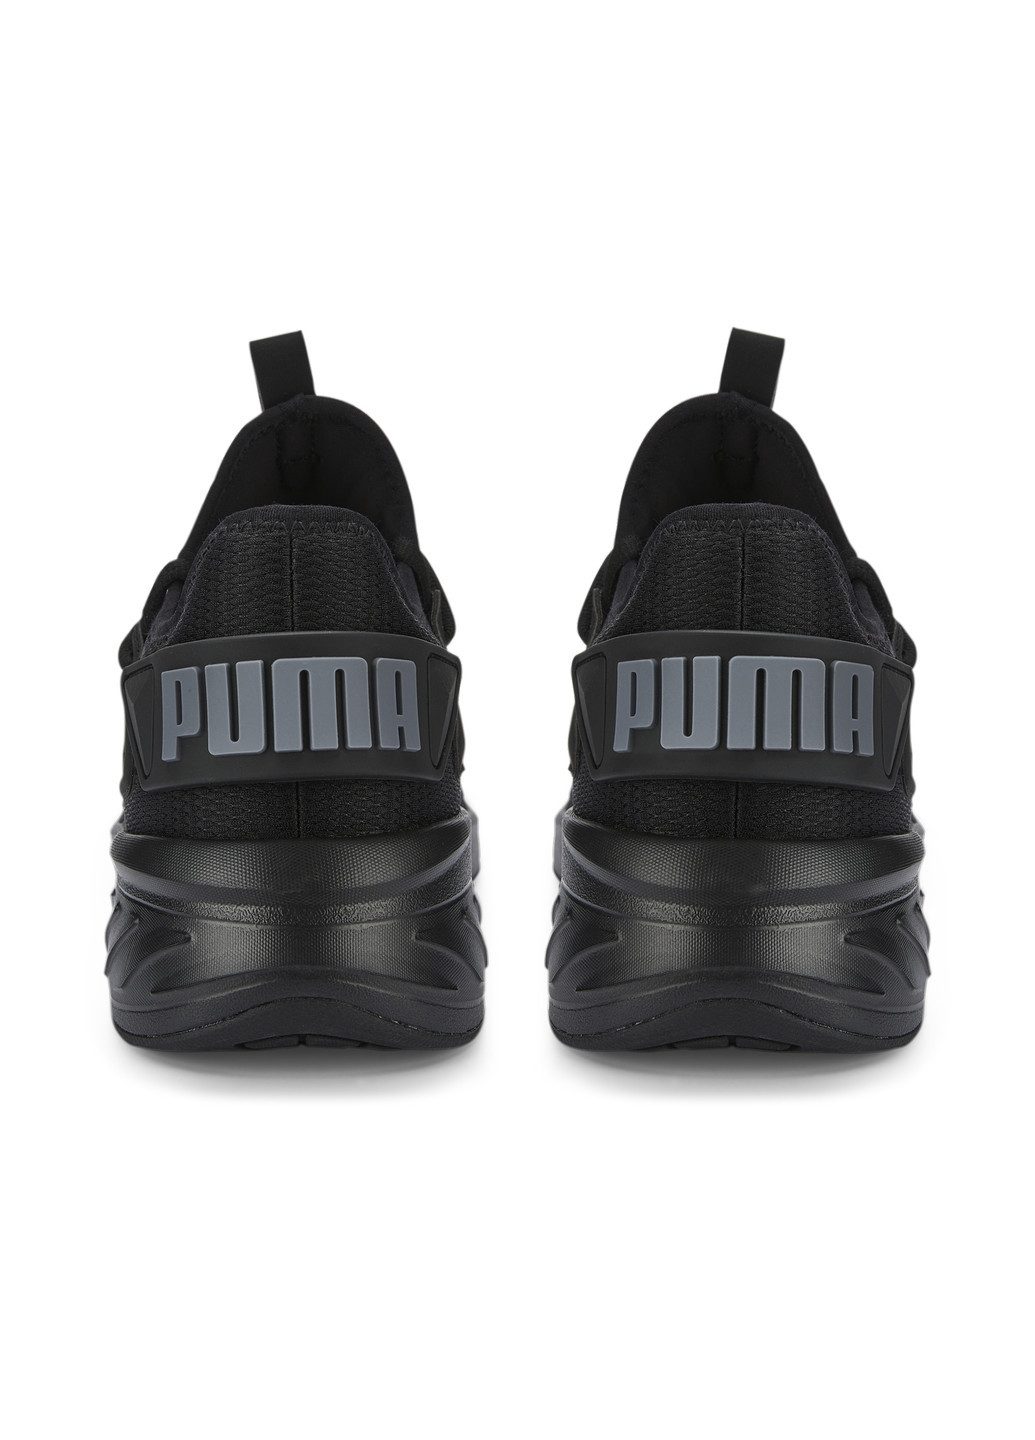 Черные всесезонные кроссовки amare running shoes Puma